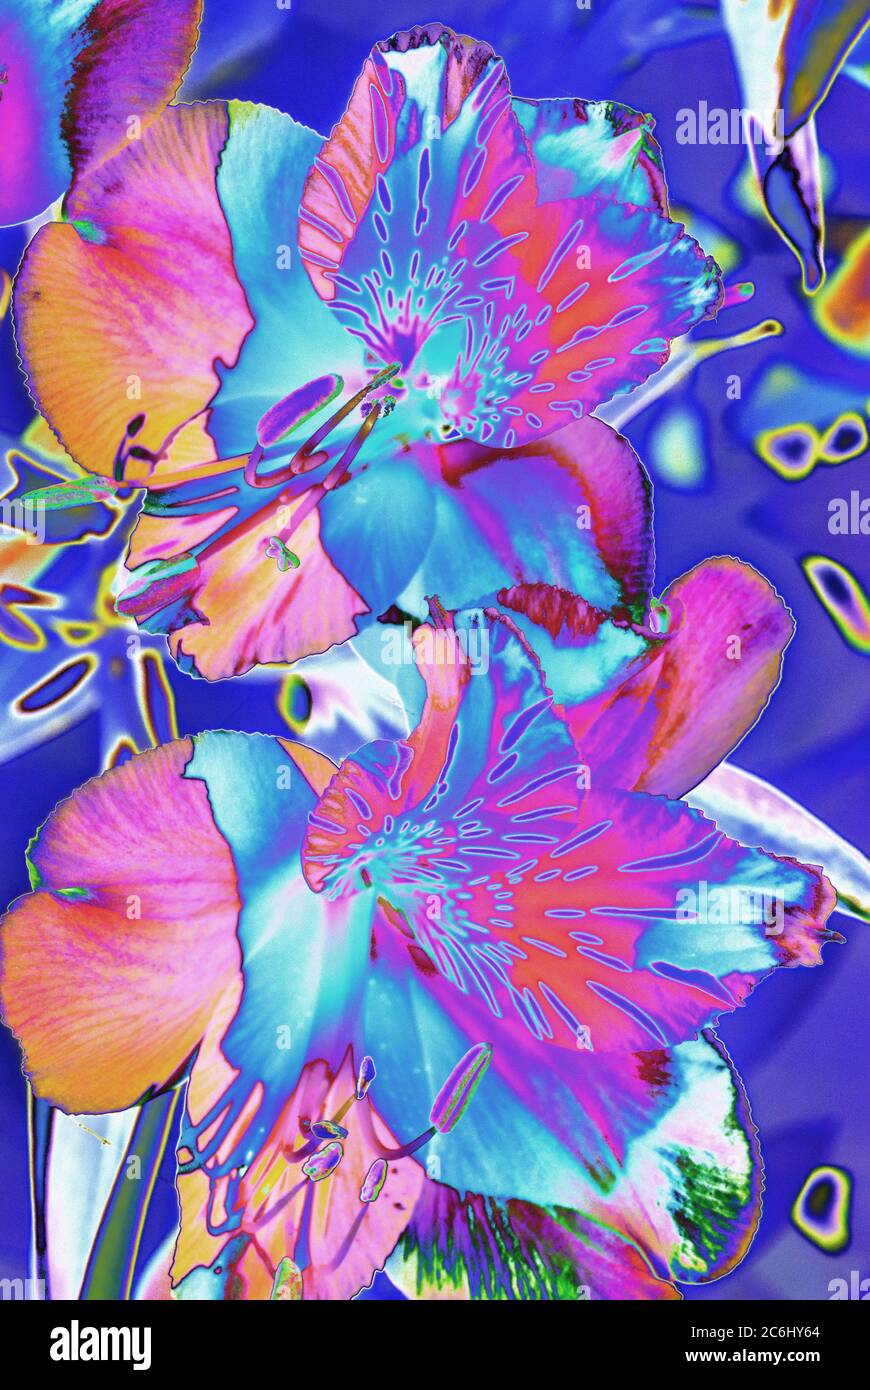 Digital manipuliertes Makroblumenbild. Psychedelisch, brillante Farben. Konzeptionell. Rote und blaue Schattierungen, Alstroemeria Blütenköpfe Anordnung. Stockfoto